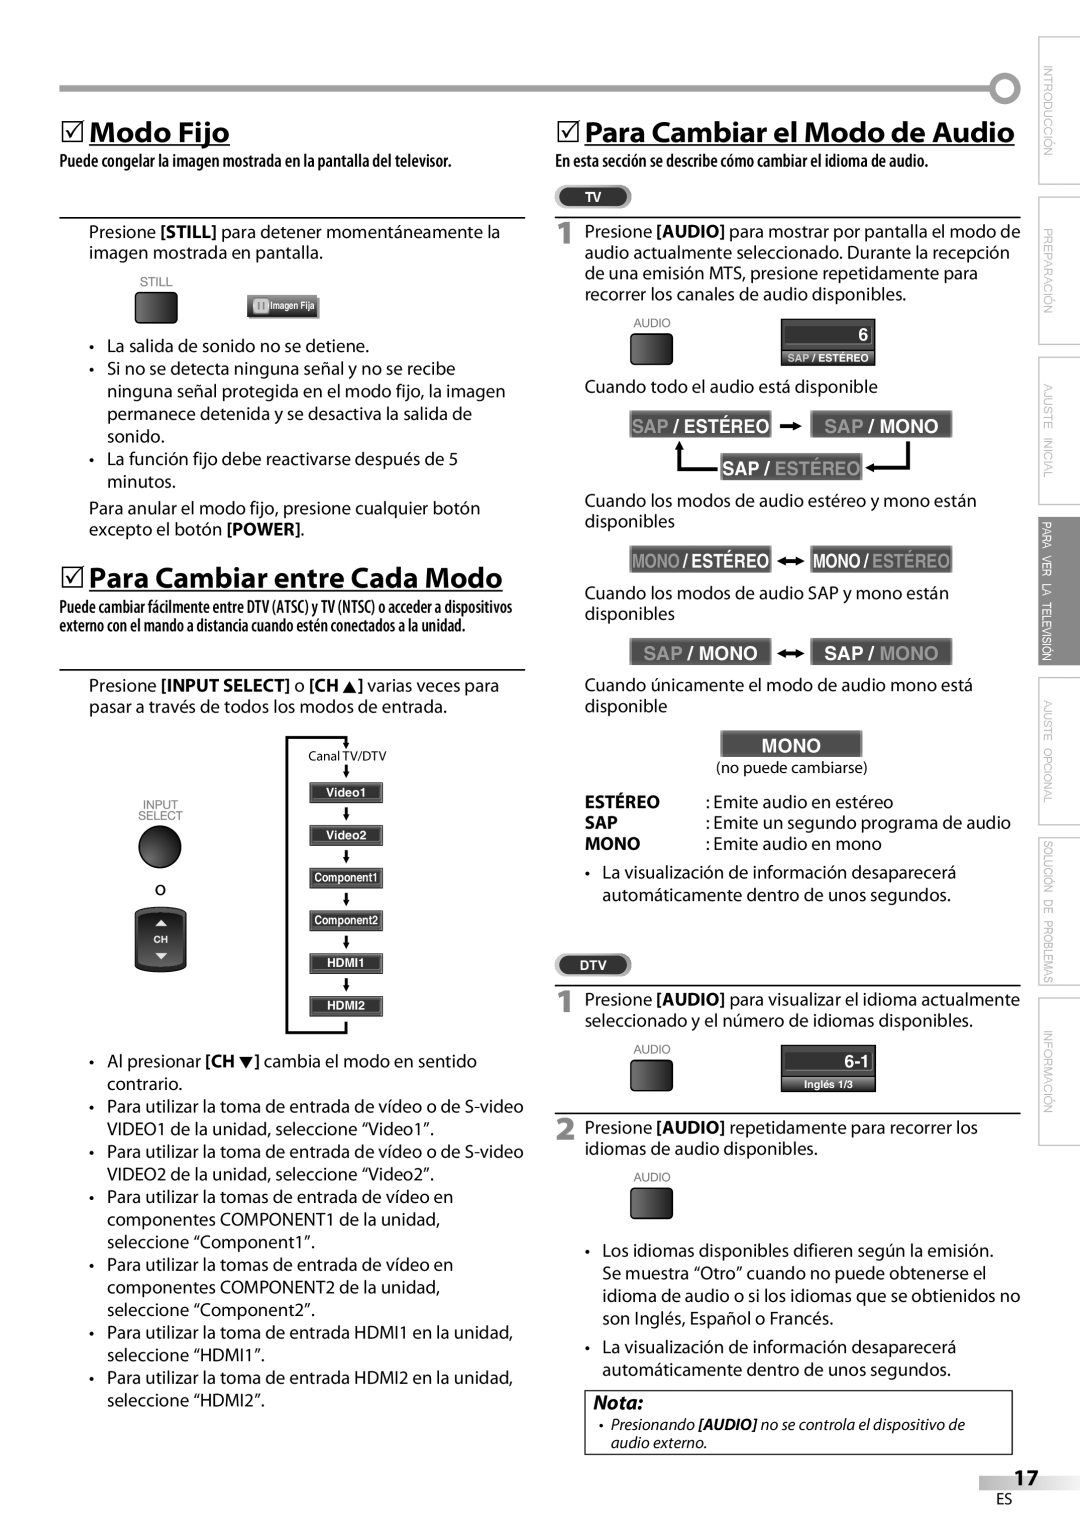 Emerson LC420EM8 owner manual 5Modo Fijo, 5Para Cambiar entre Cada Modo, 5Para Cambiar el Modo de Audio, Nota, Sap / Mono 